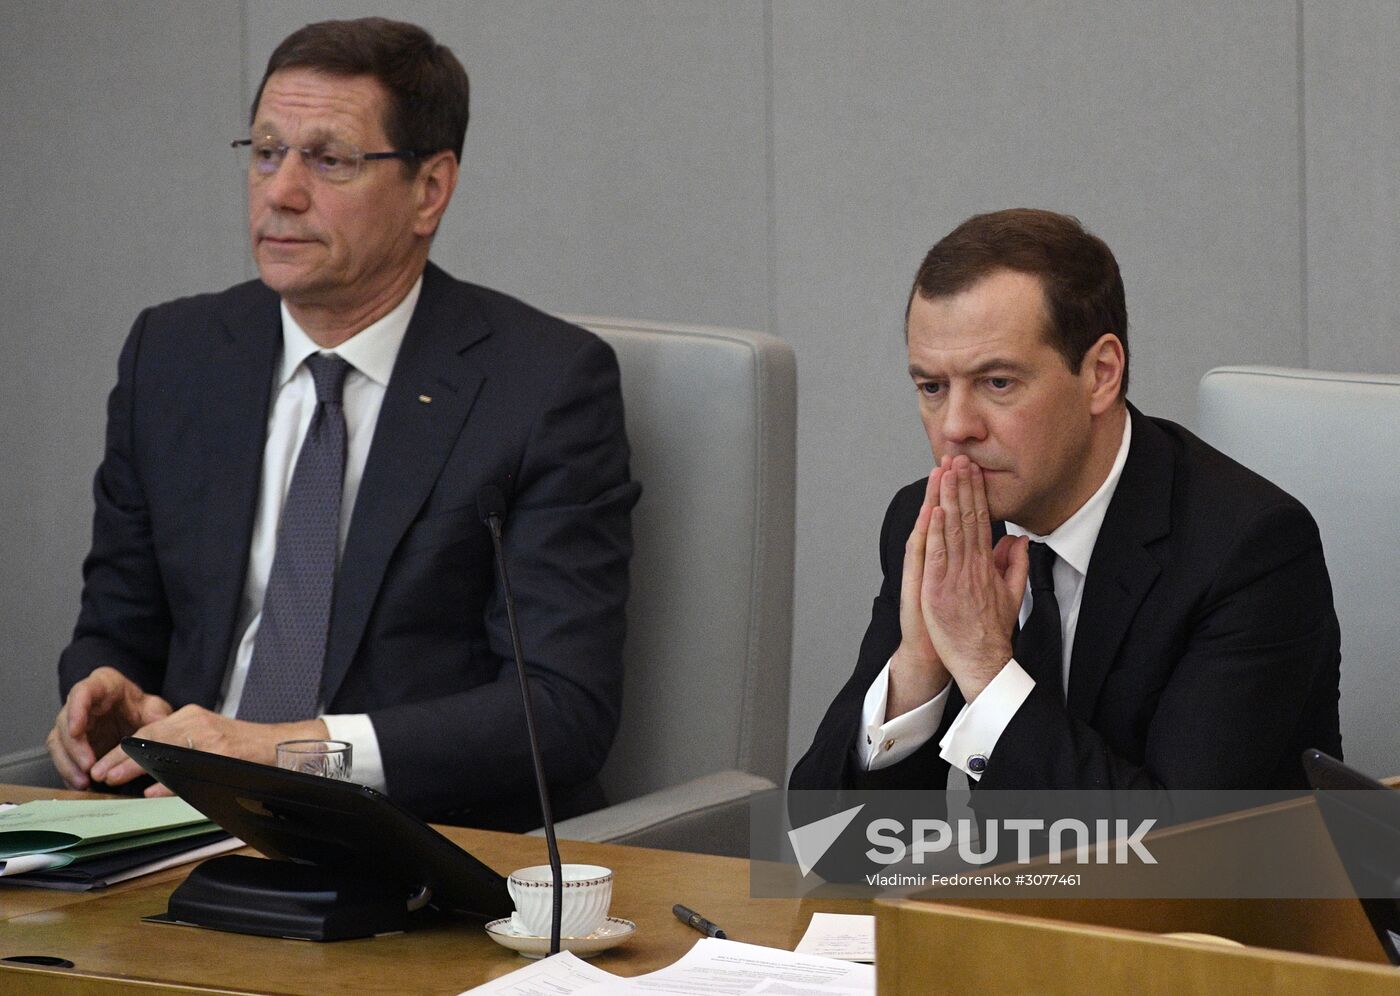 Prime Minister Dmitry Medvedev addresses plenary meeting in the State Duma